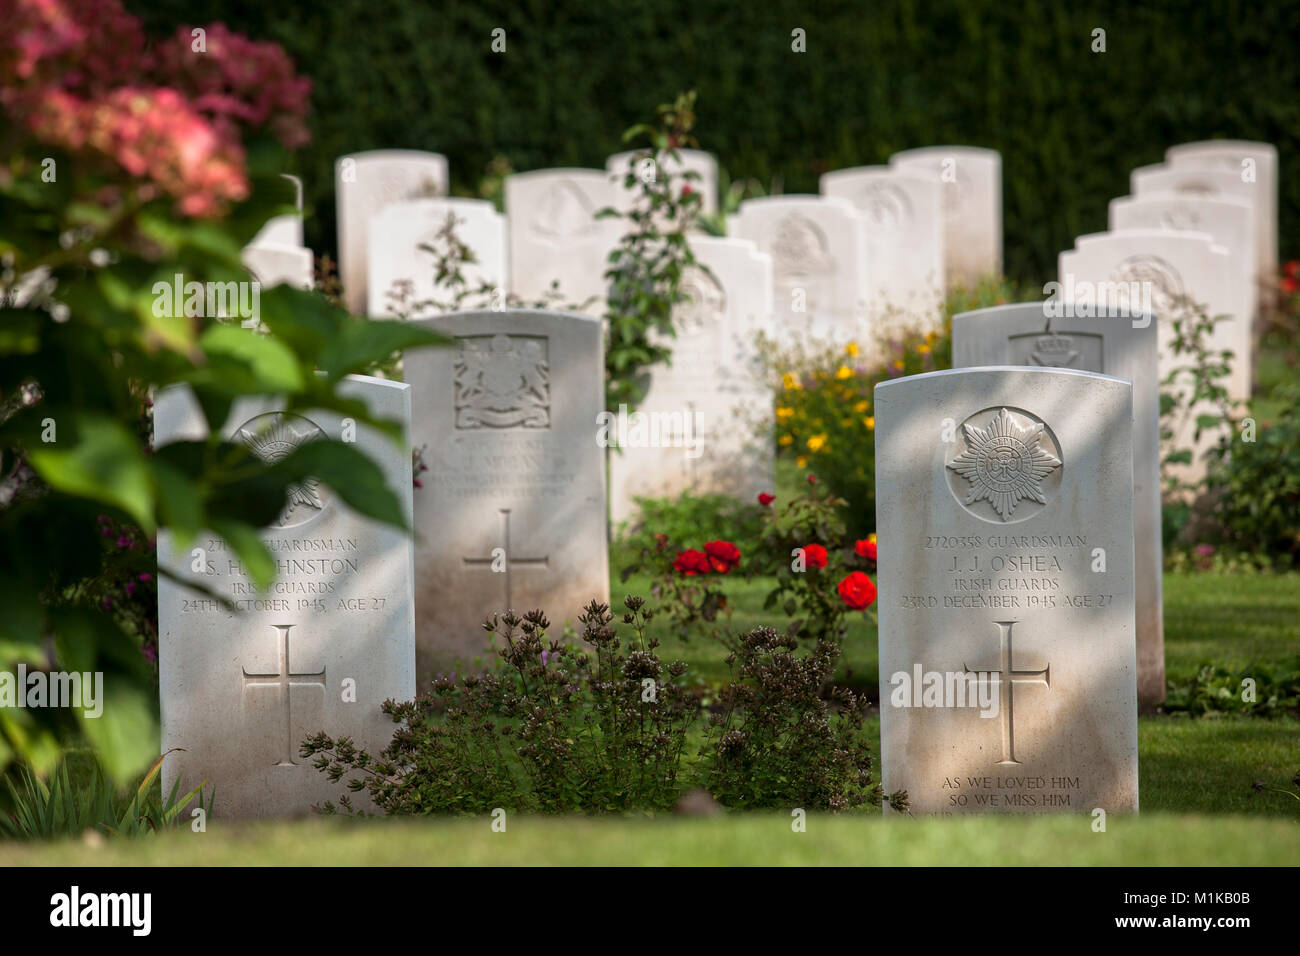 Alemania, Colonia, Commonwealth de las tumbas de guerra Comisión dentro del Cementerio cementerio sur de Colonia en el distrito Zollstock, la Commonwealth Cemeter Guerra Foto de stock